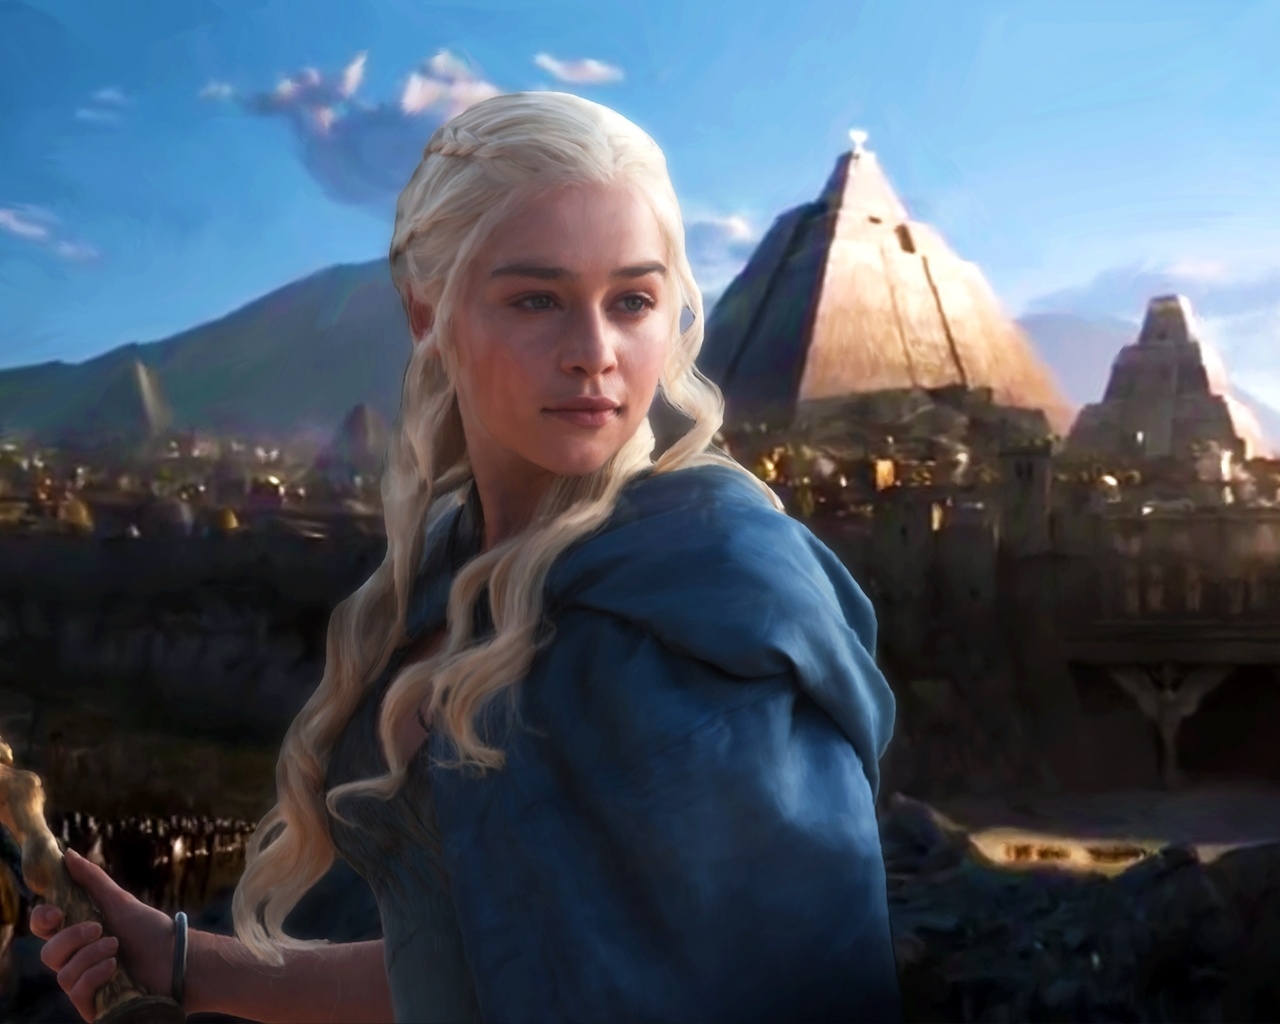 Daenerys Targaryen Fan Art for 1280 x 1024 resolution